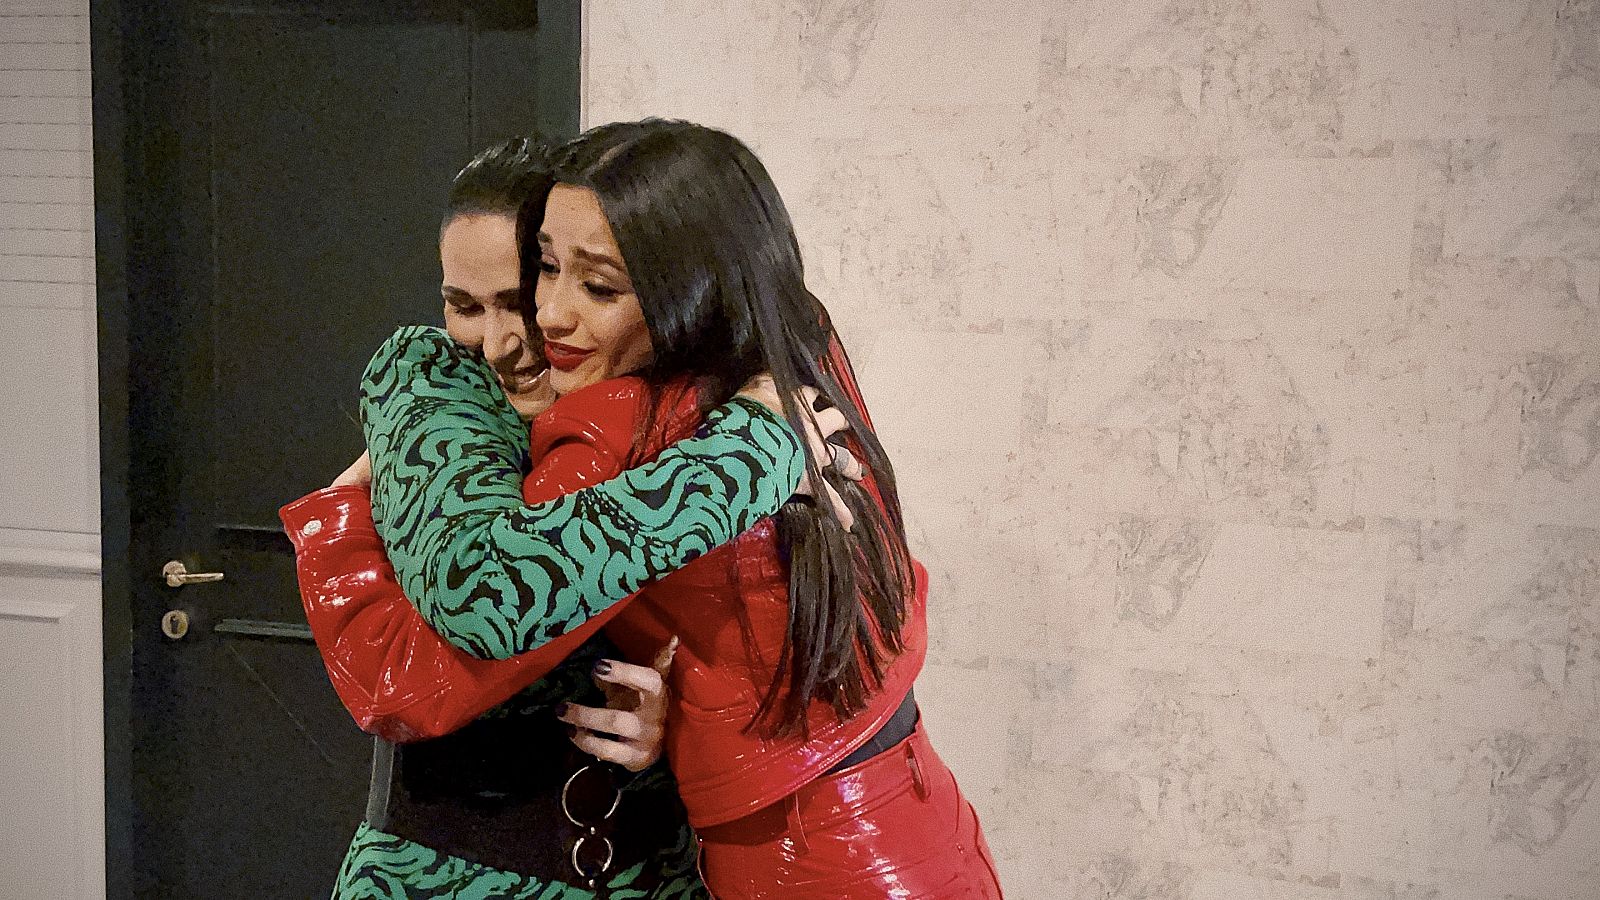 Rosa López y Chanel se funden en un cálido abrazo tras verse por primera vez en persona